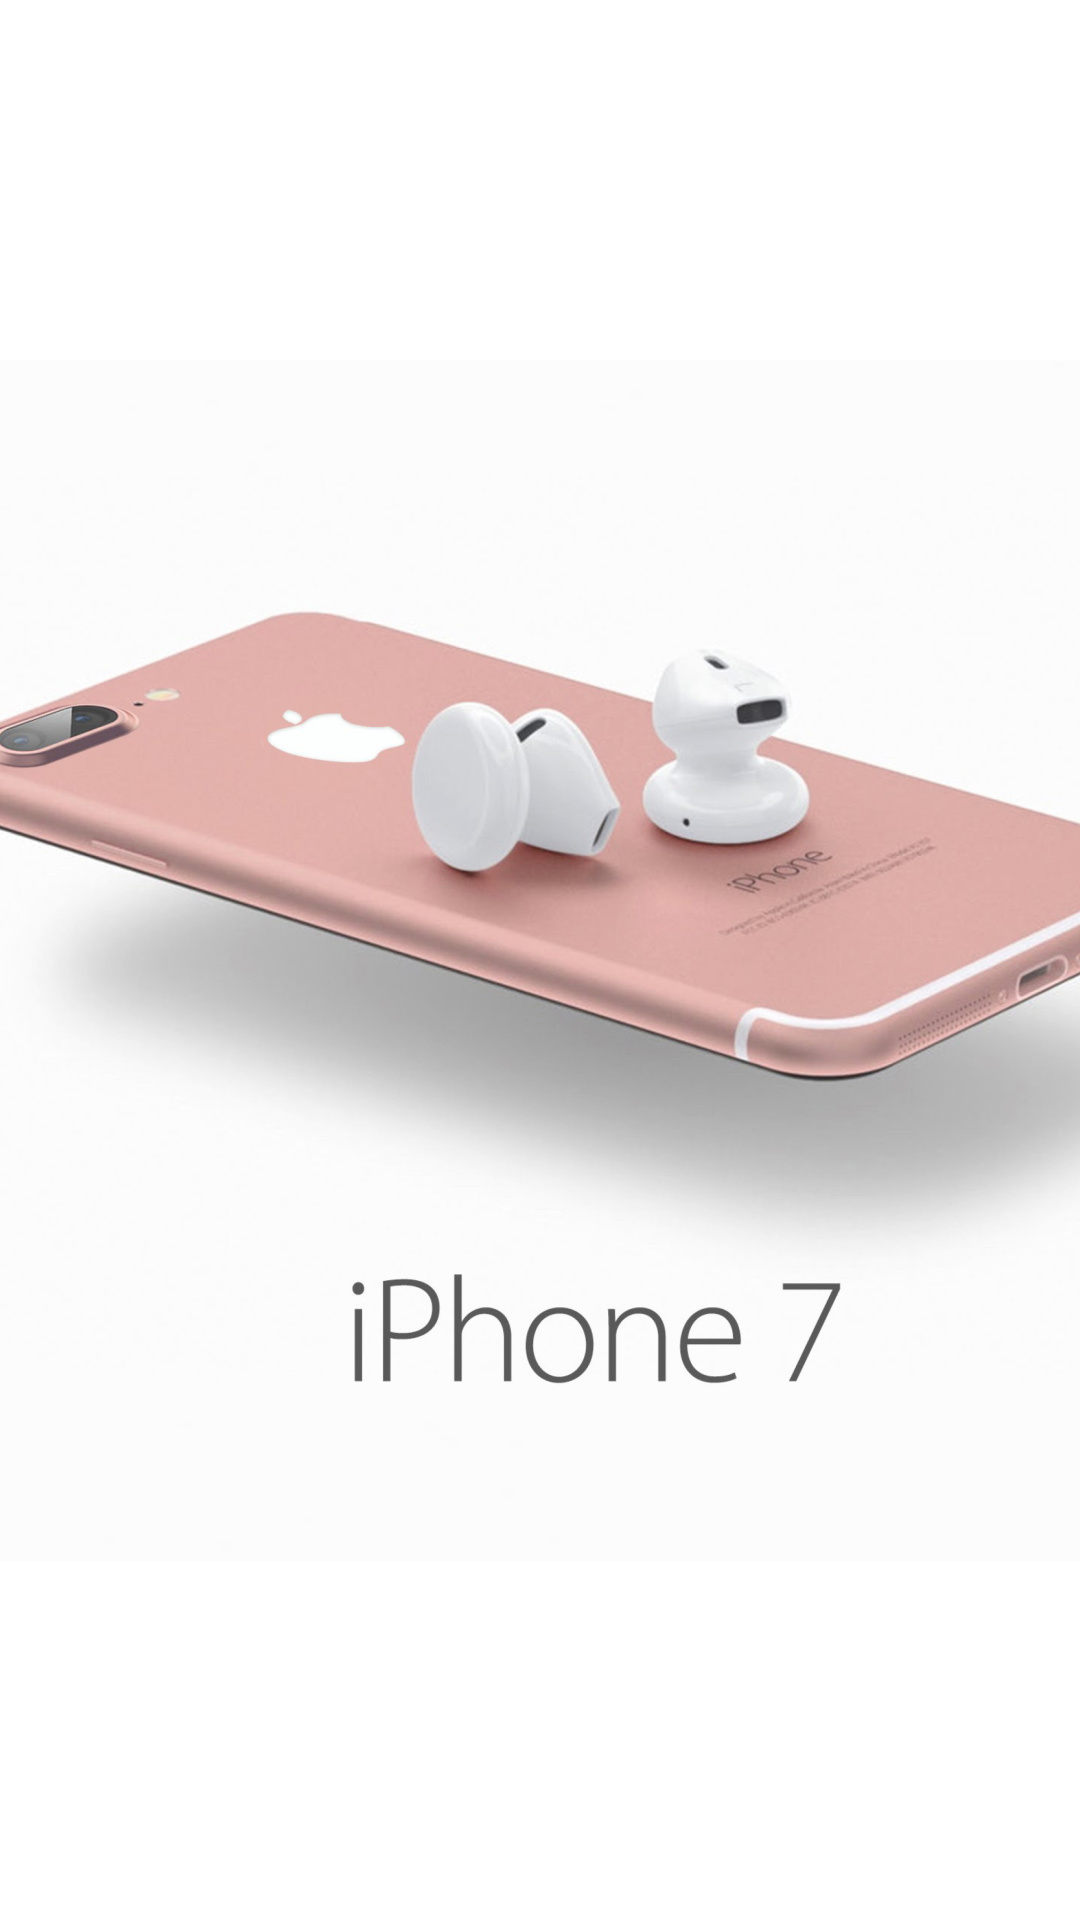 Sfondi Apple iPhone 7 32GB Pink 1080x1920